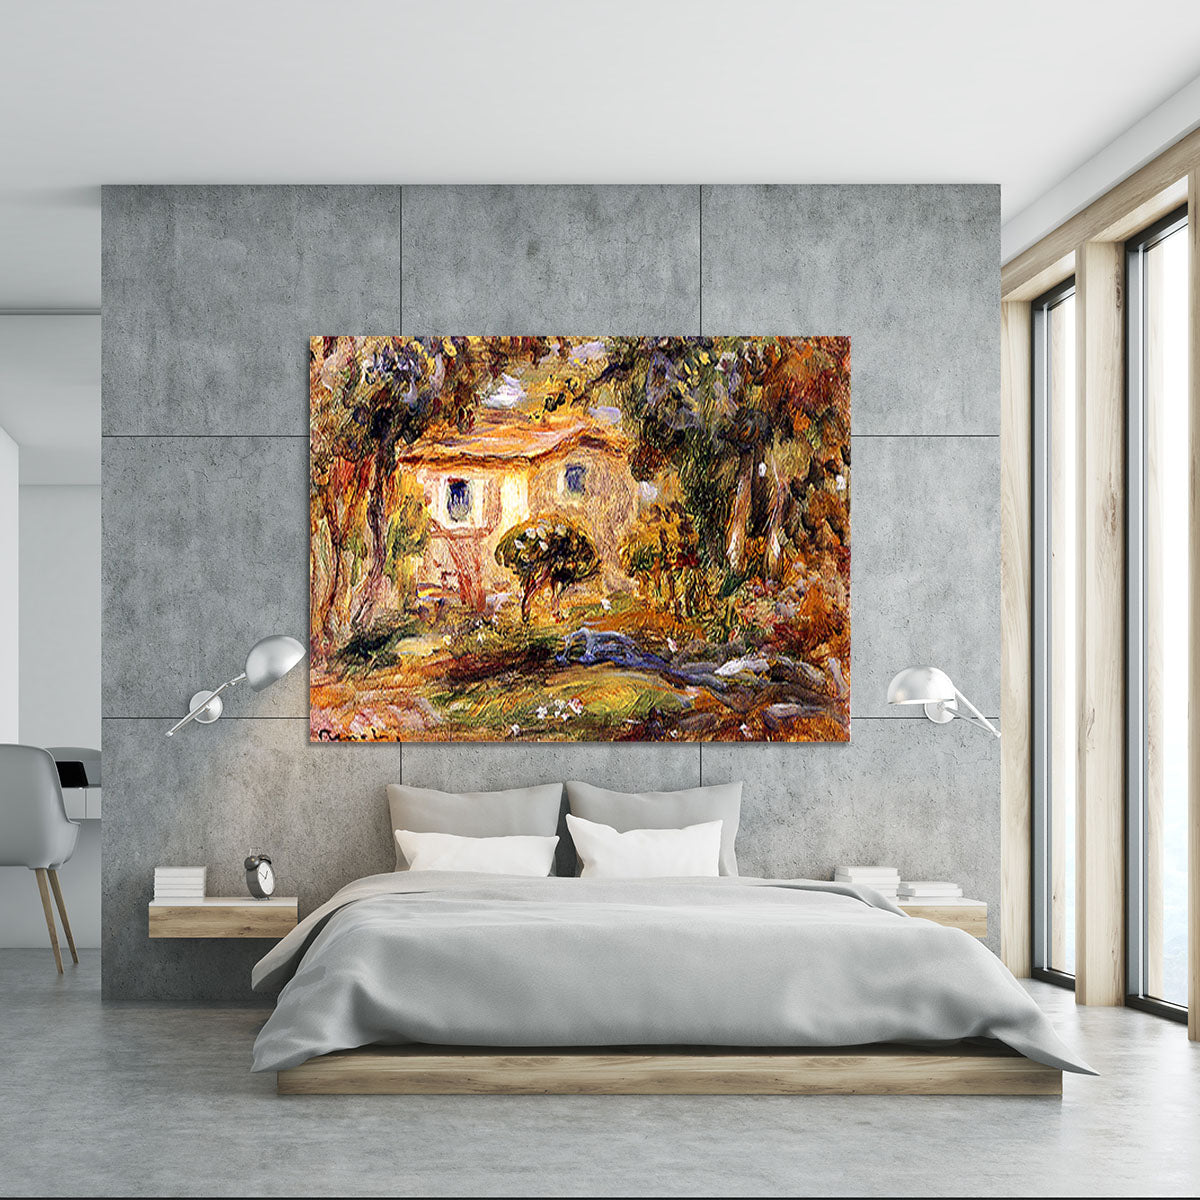 Landscape1 by Renoir Canvas Print or Poster - Canvas Art Rocks - 5